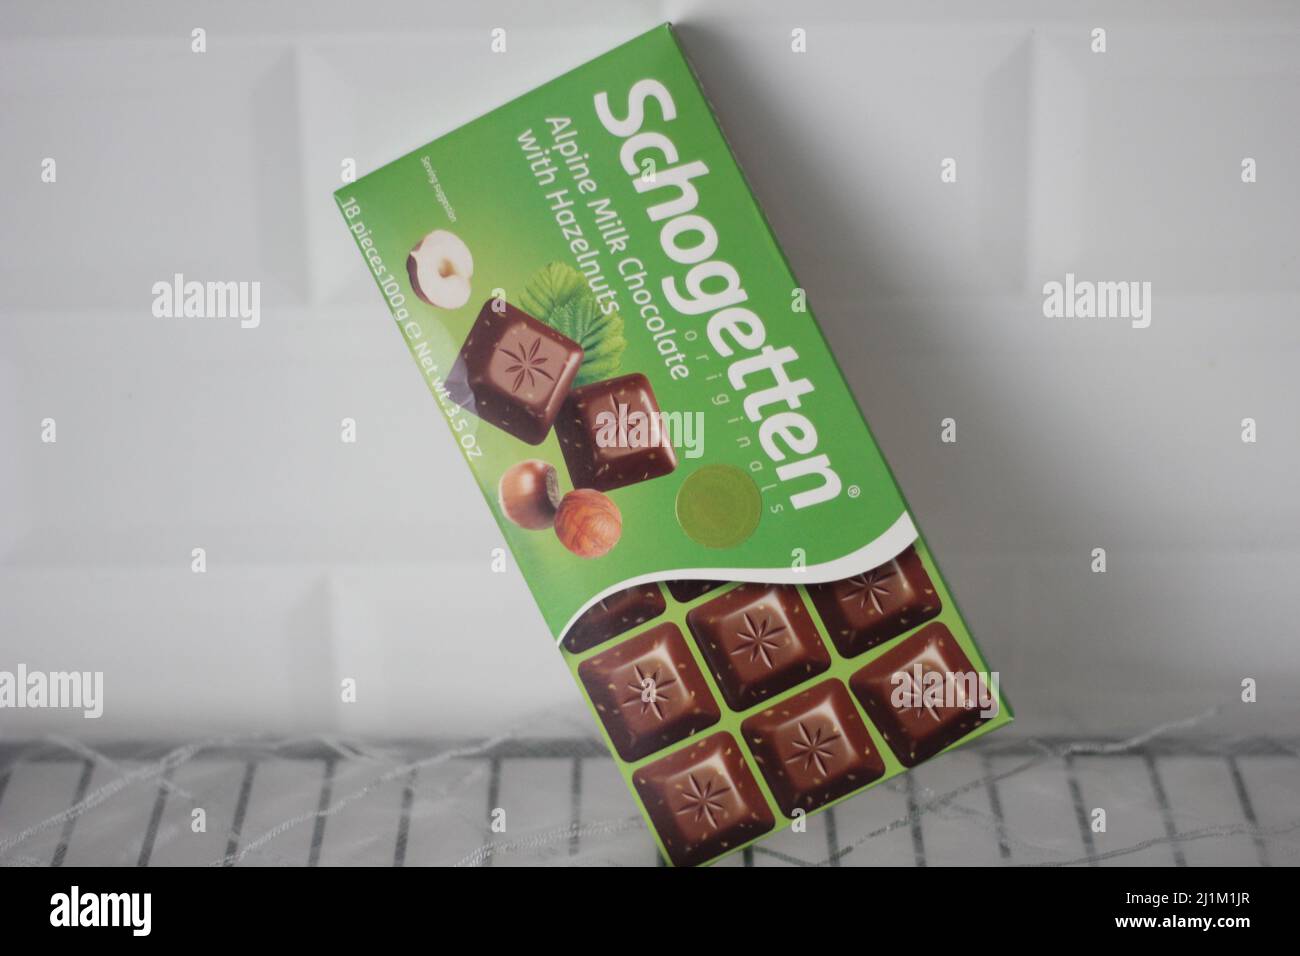 Istanbul, Türkei- März 09 2022: Schogetten Marke grüne Tablette Schokolade Produkt mit Haselnüssen, Küche Konzept Idee. Stockfoto